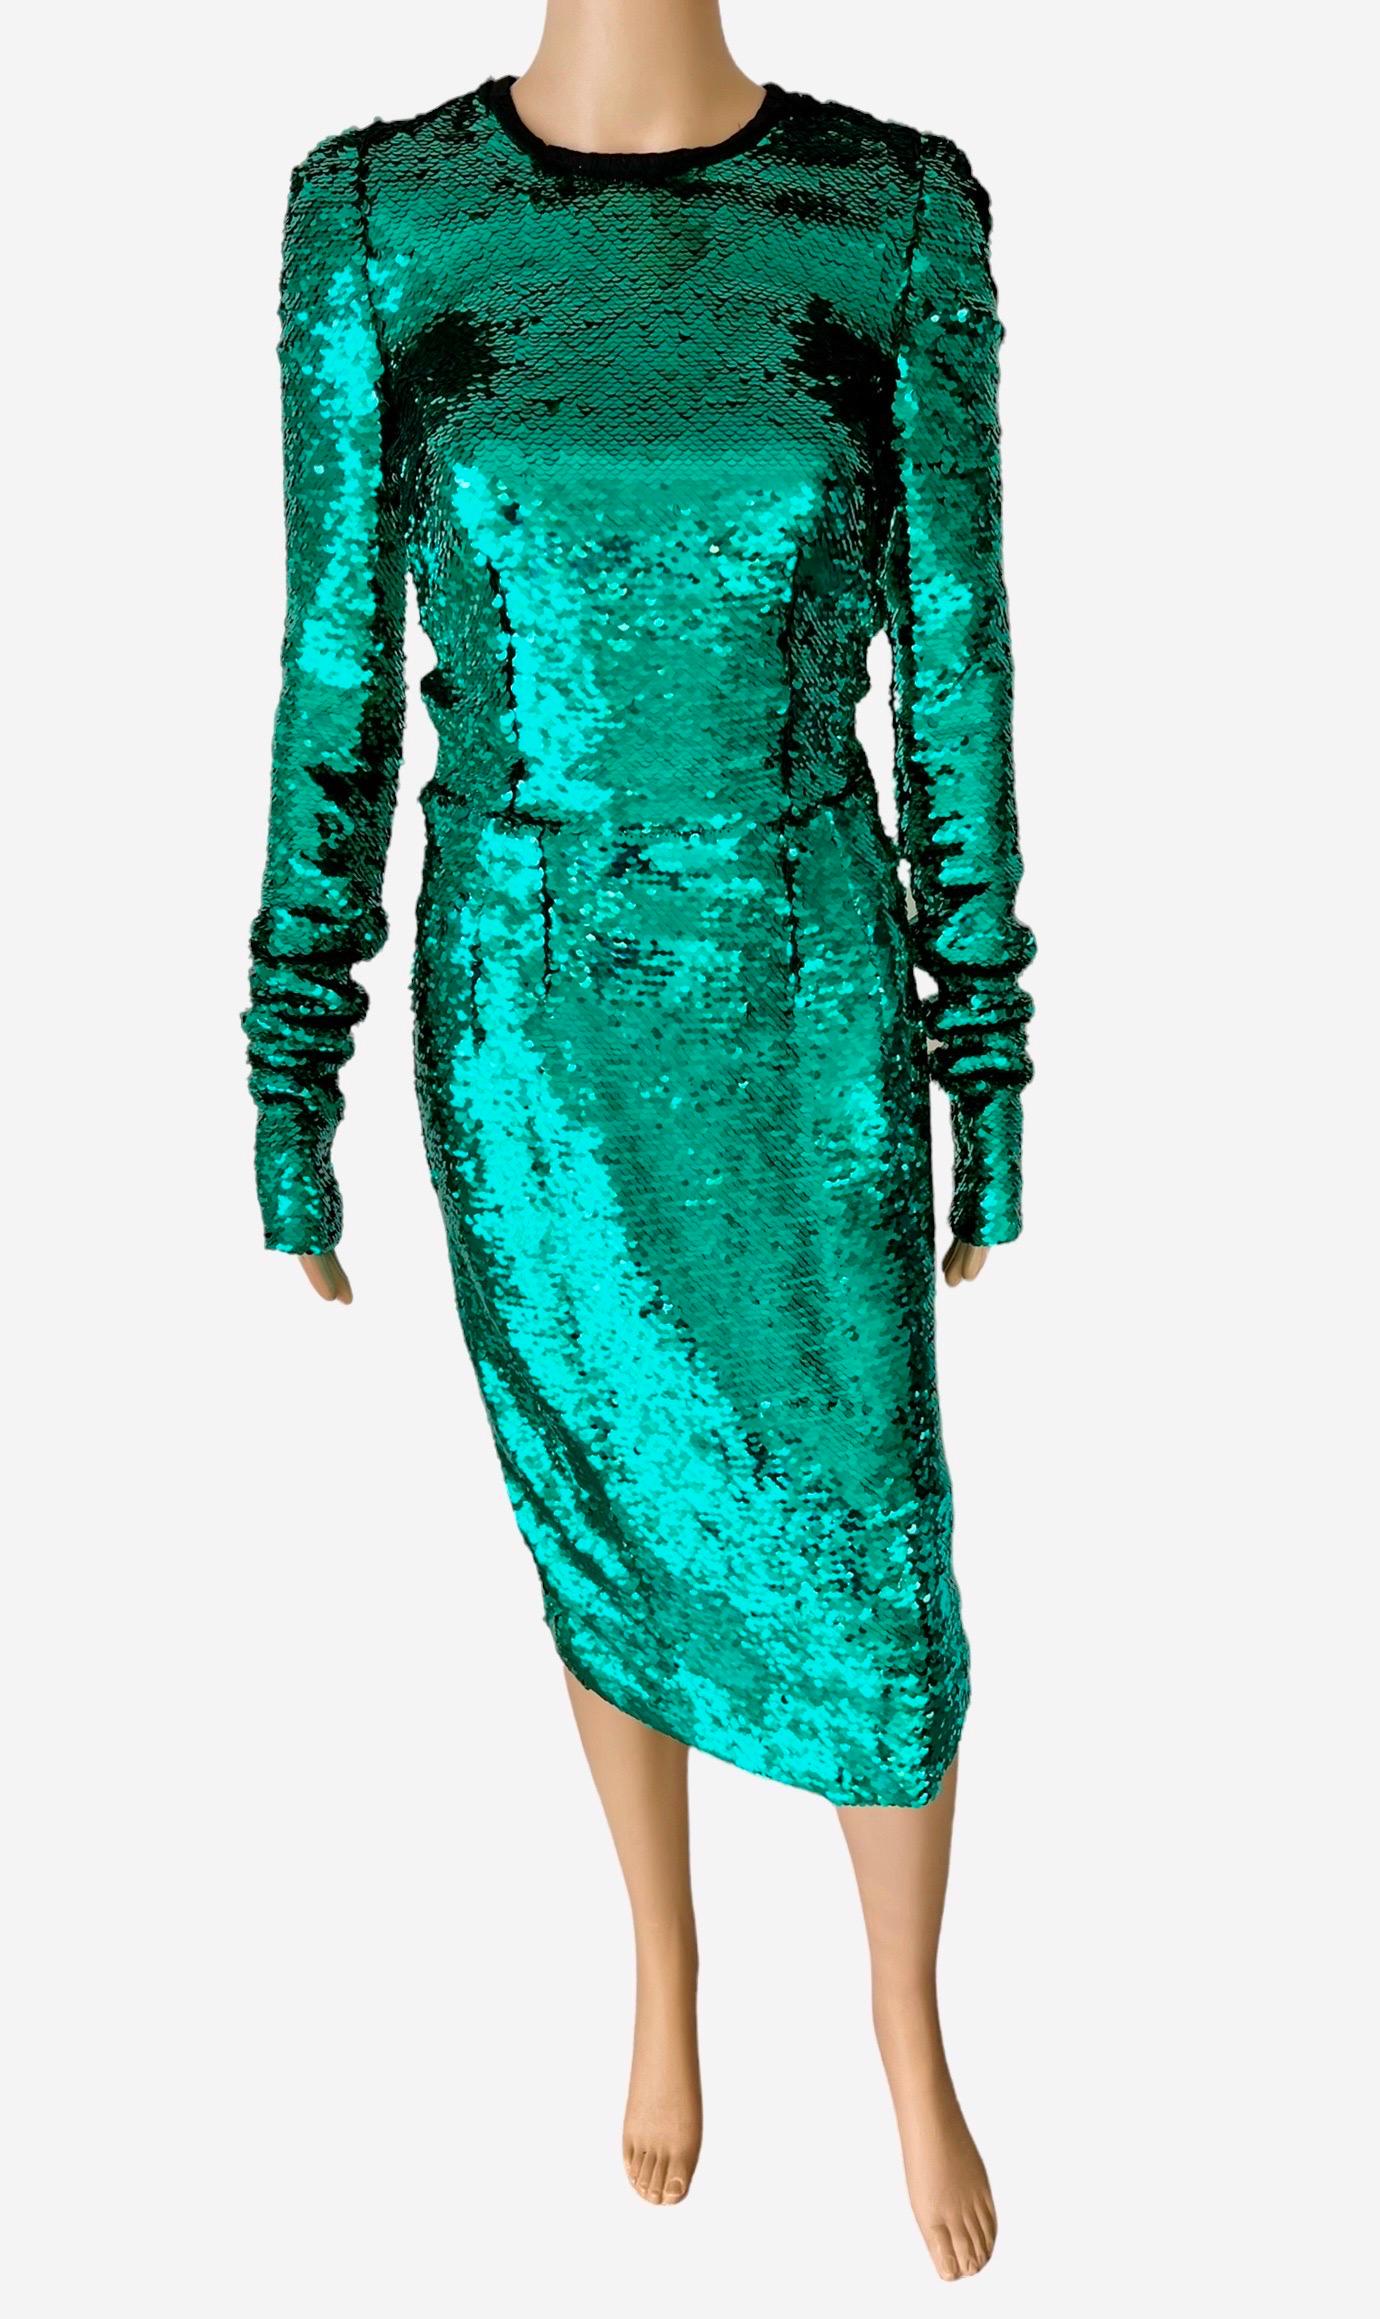 Dolce & Gabbana F/W 2011 Runway Ungetragene Pailletten verschönert Grün Abendkleid IT 40

Look 45 aus der Herbstkollektion 2011

Zustand: Neu mit Tags




